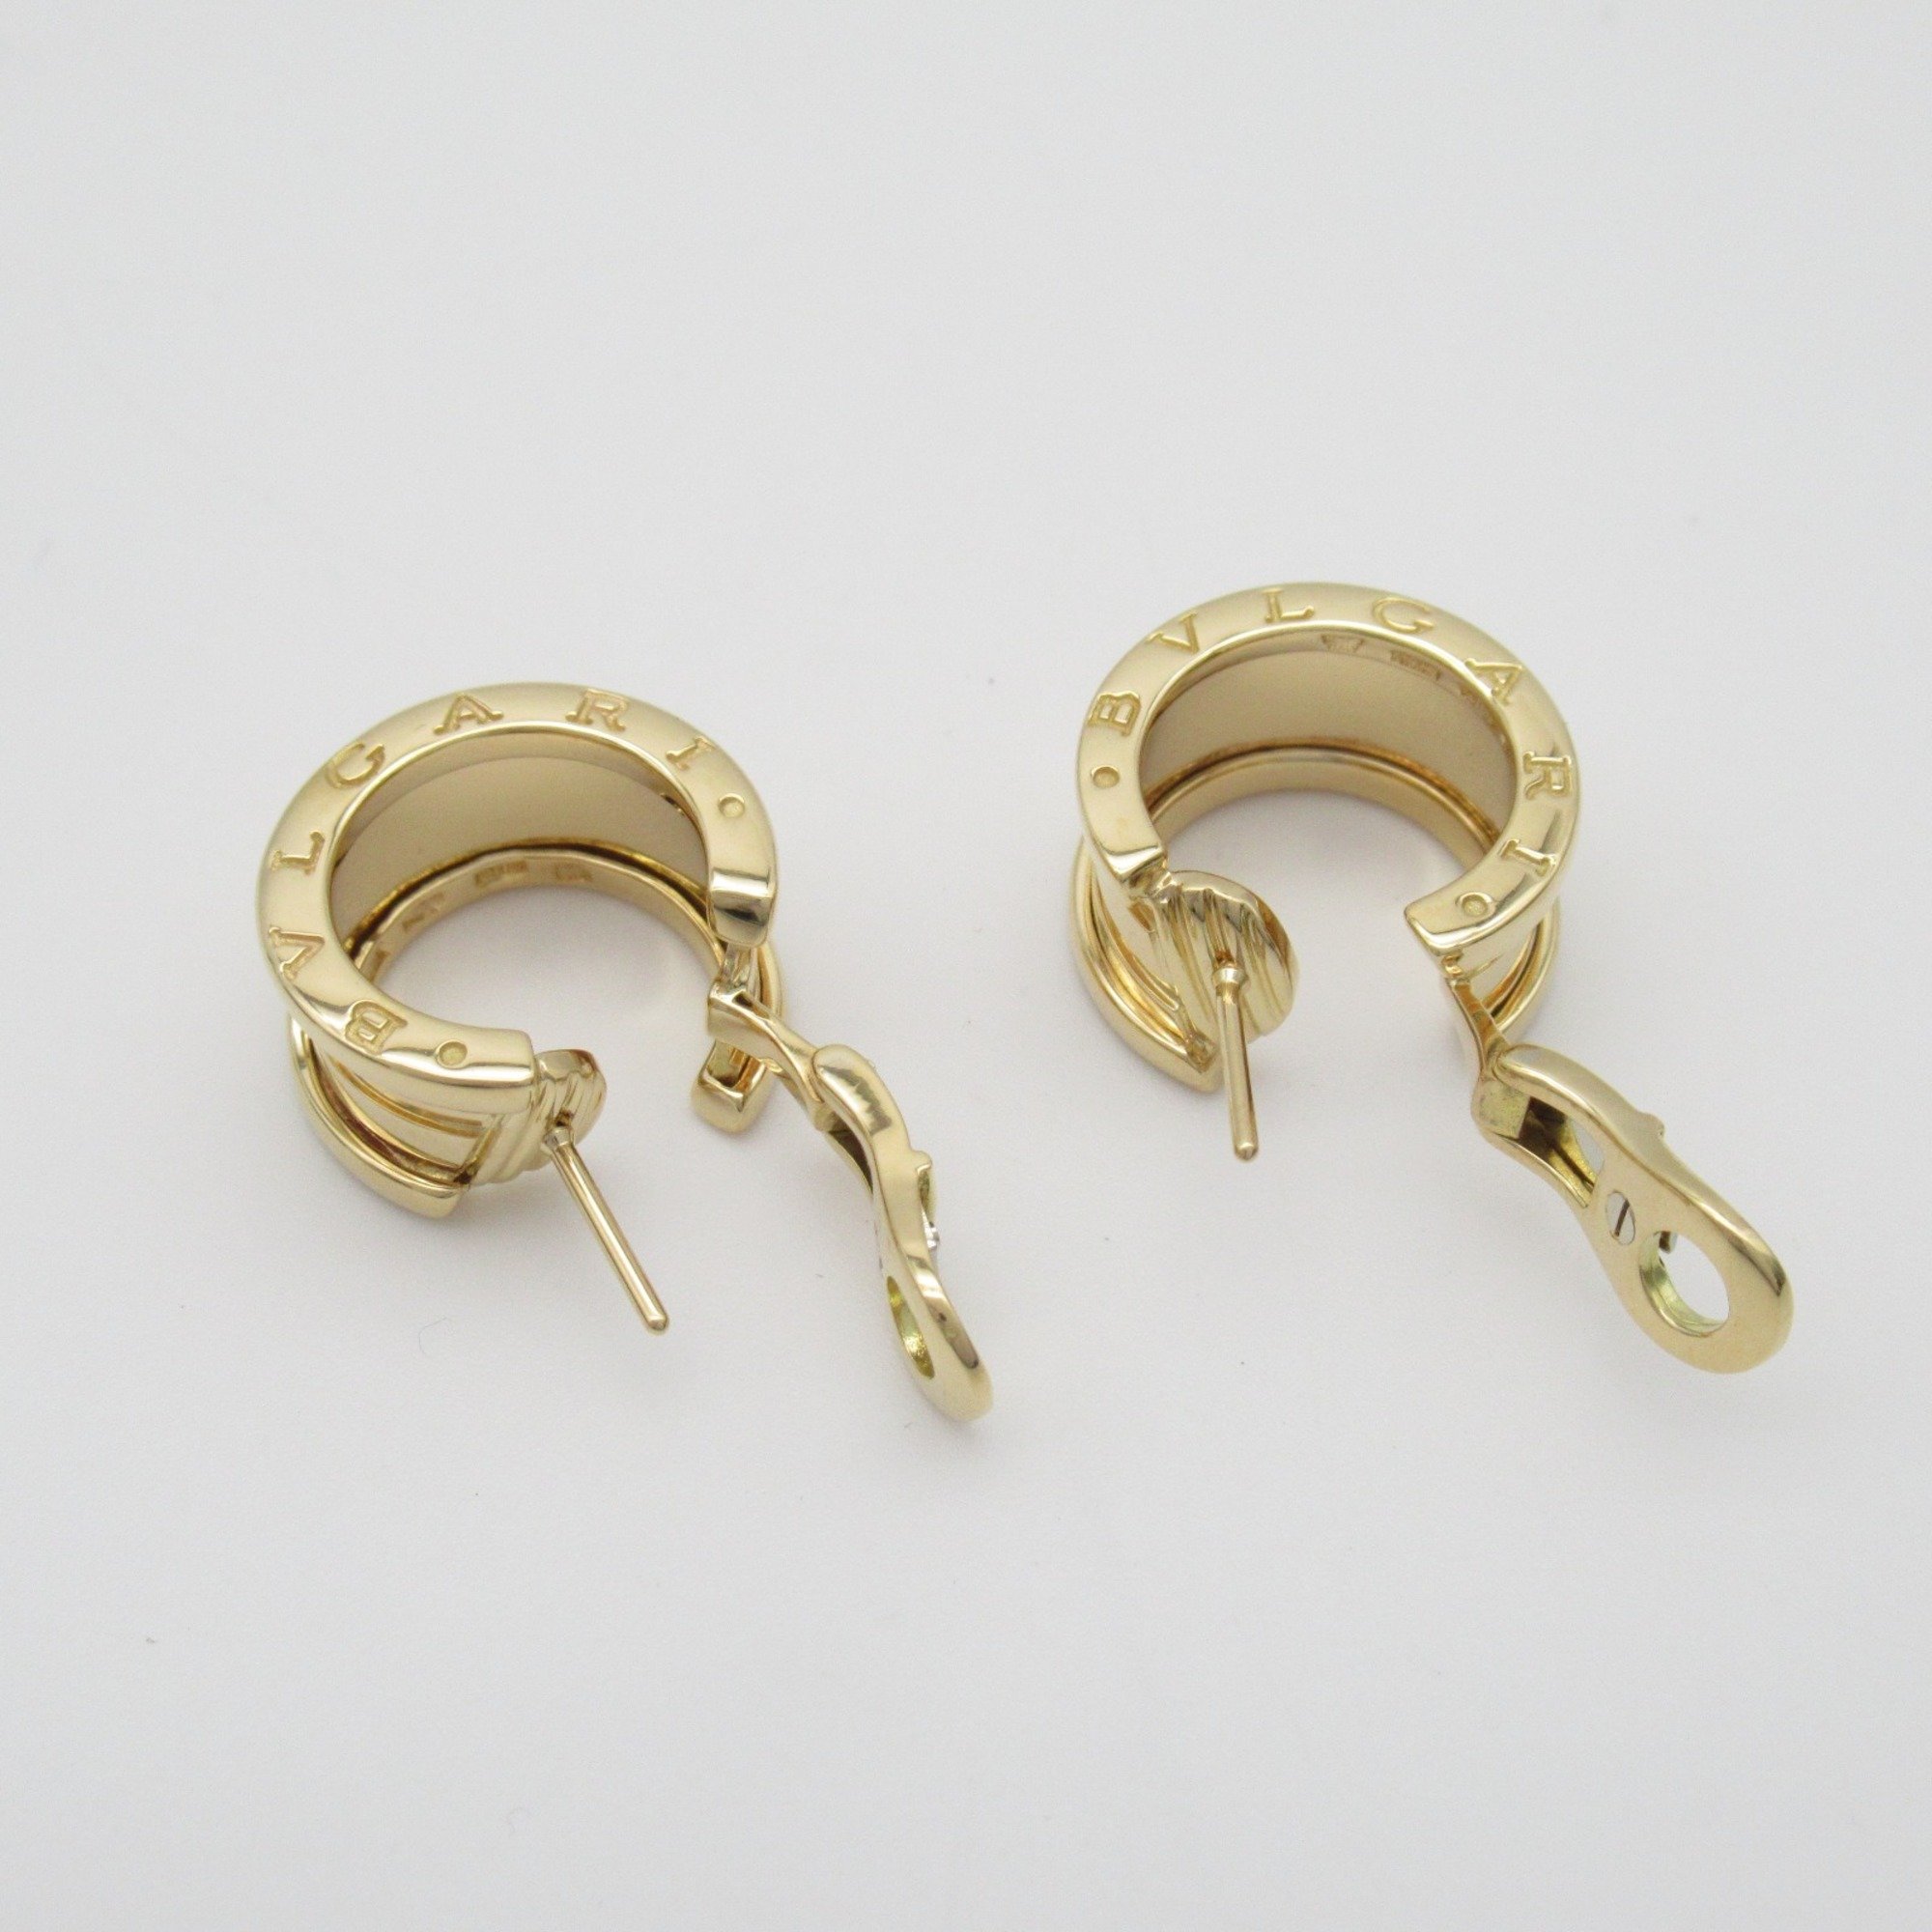 BVLGARI B-zero1 Earring Earring Gold  K18 (Yellow Gold) Gold